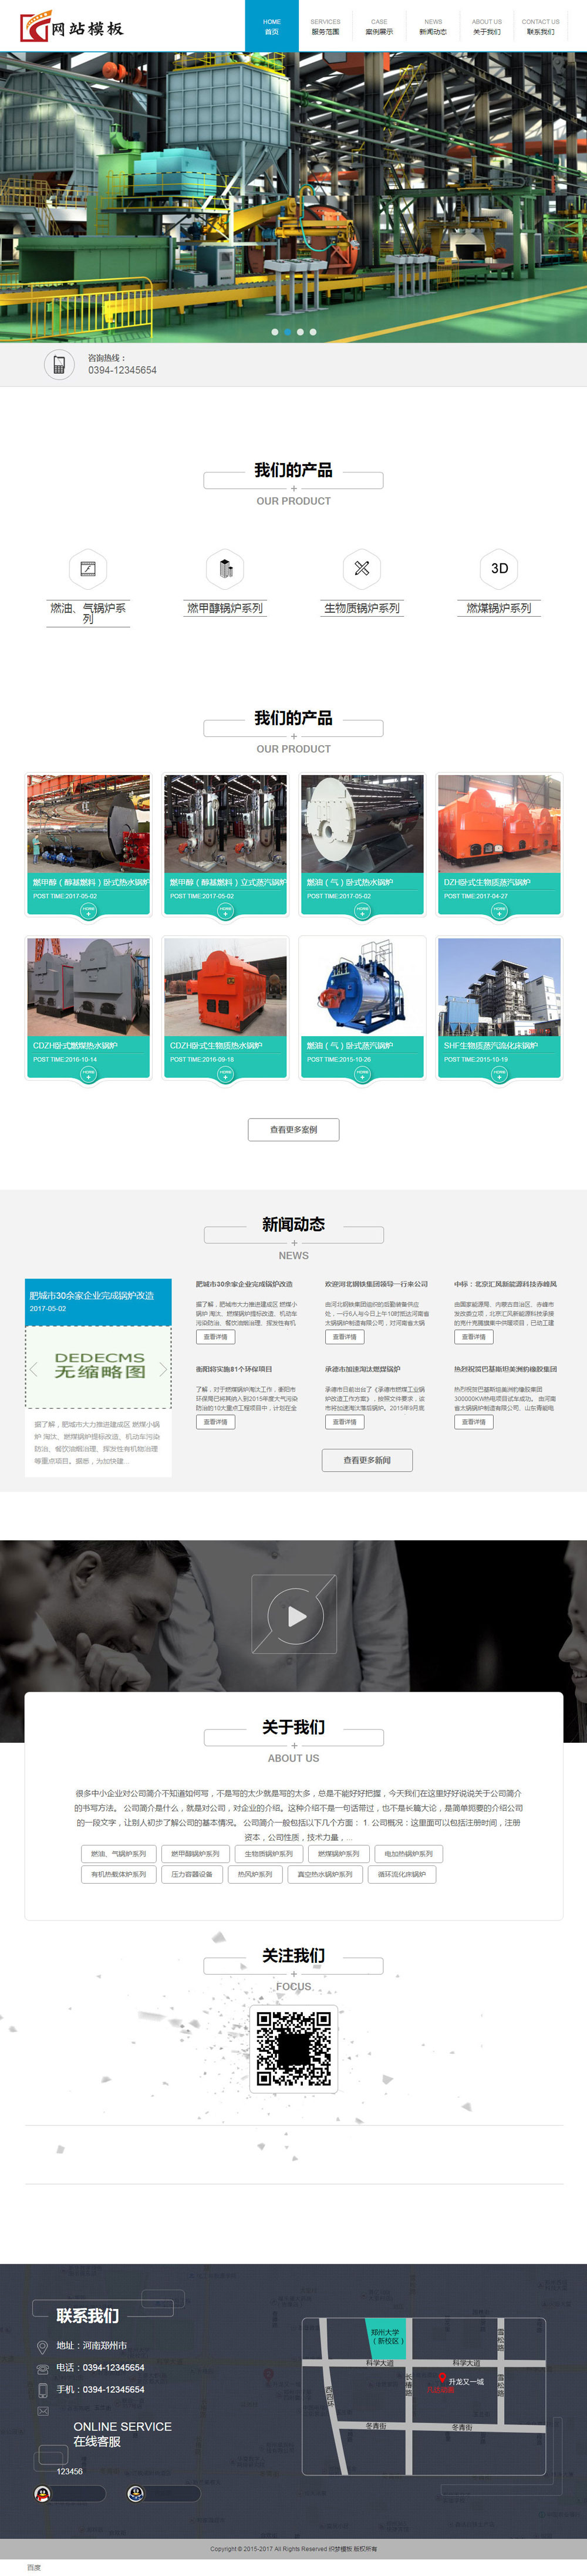 蓝色机械设备类公司网站织梦模板